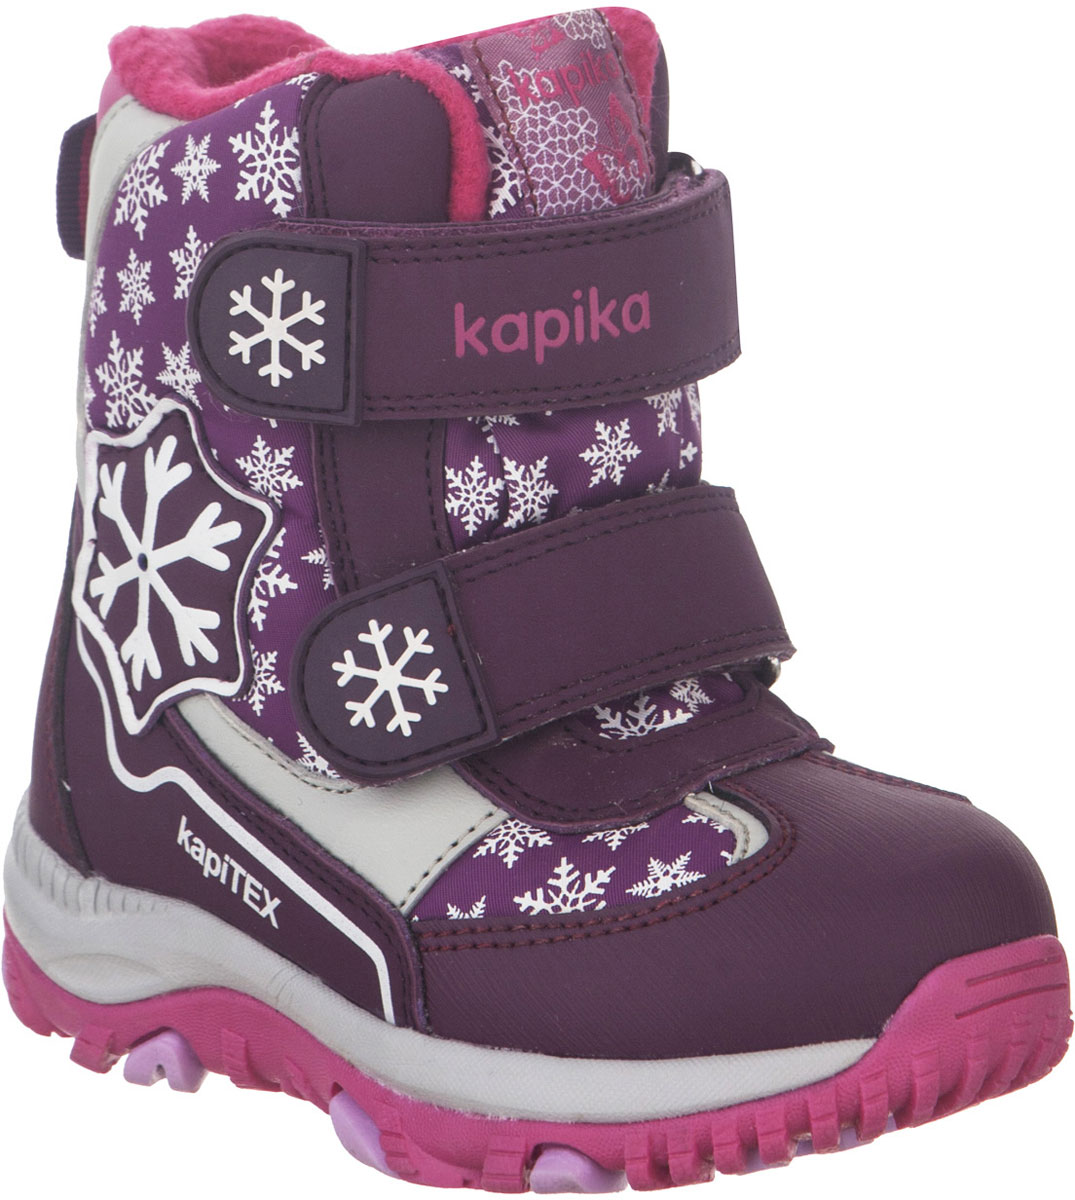 Ботинки для девочки Kapika, цвет: фиолетовый, фуксия. 41226-1. Размер 25